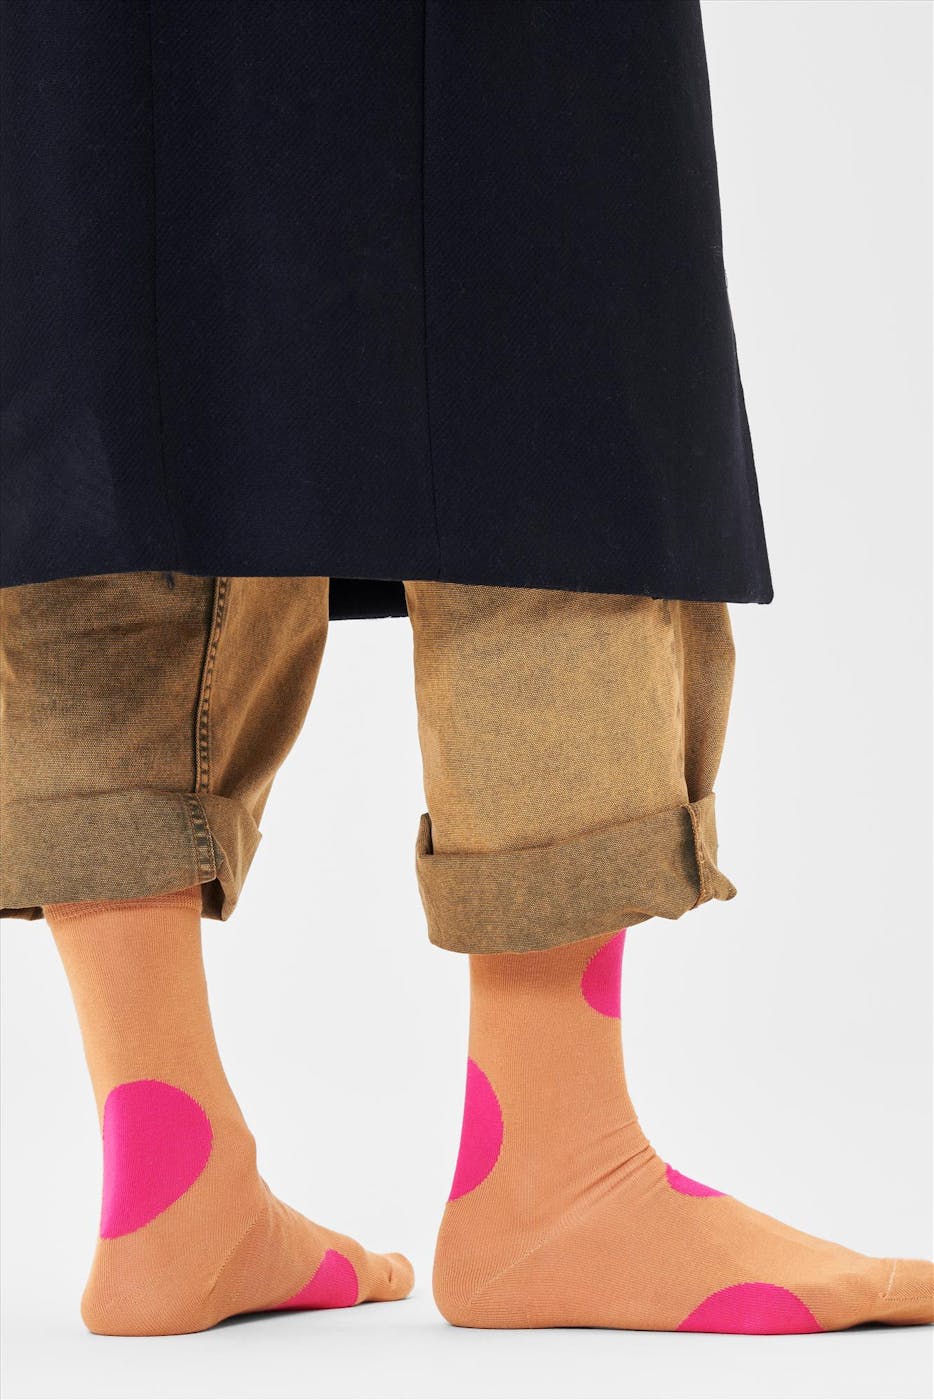 Happy Socks - Beige met roze Jumbo Dot sokken, maat 36-40